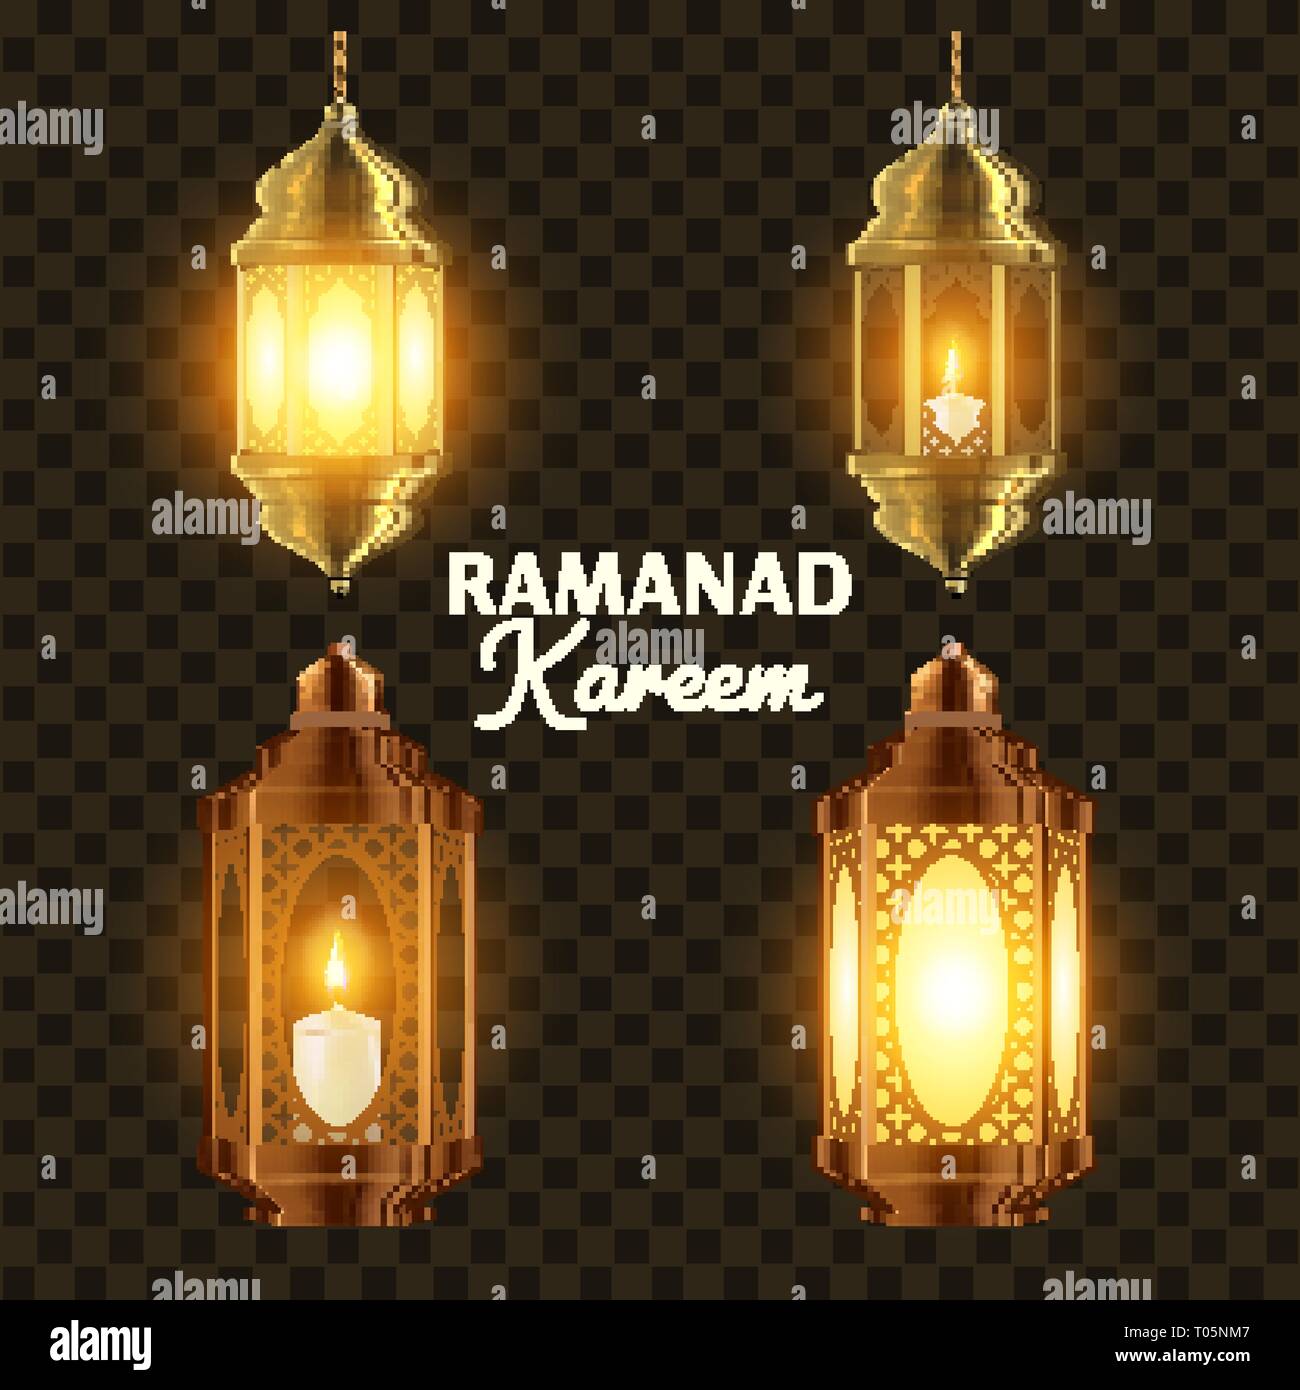 Ramadan Lamp Set Vector. Islam. Kareem Lamp. Lantern Design. Mubarak Night.  Ramazan Greeting Design. Muslim Fanous, Fanoos. Islamic Season Invitation  Stock Vector Image & Art - Alamy